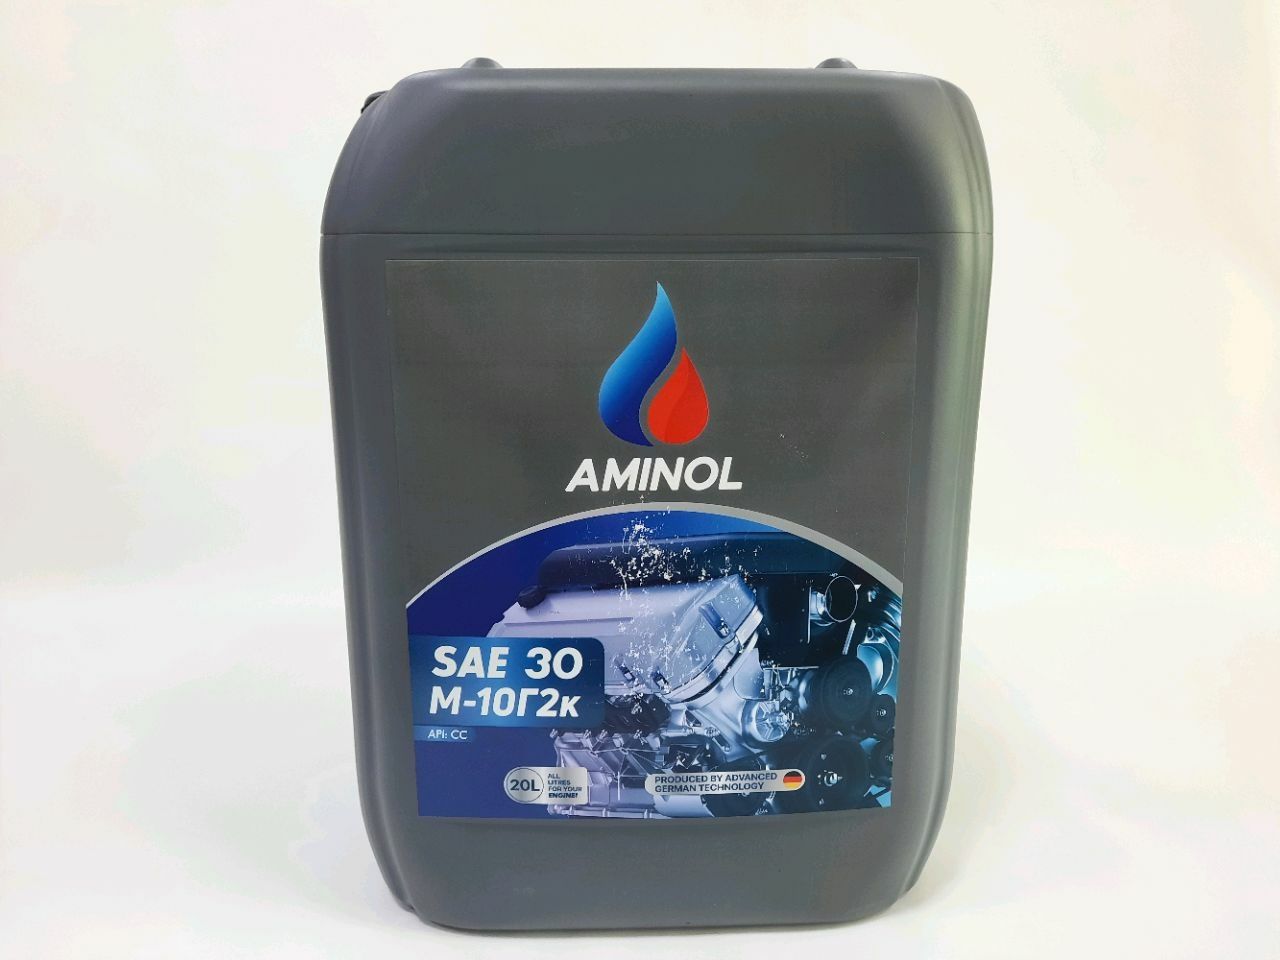 Aminol M-10G2k 20L.